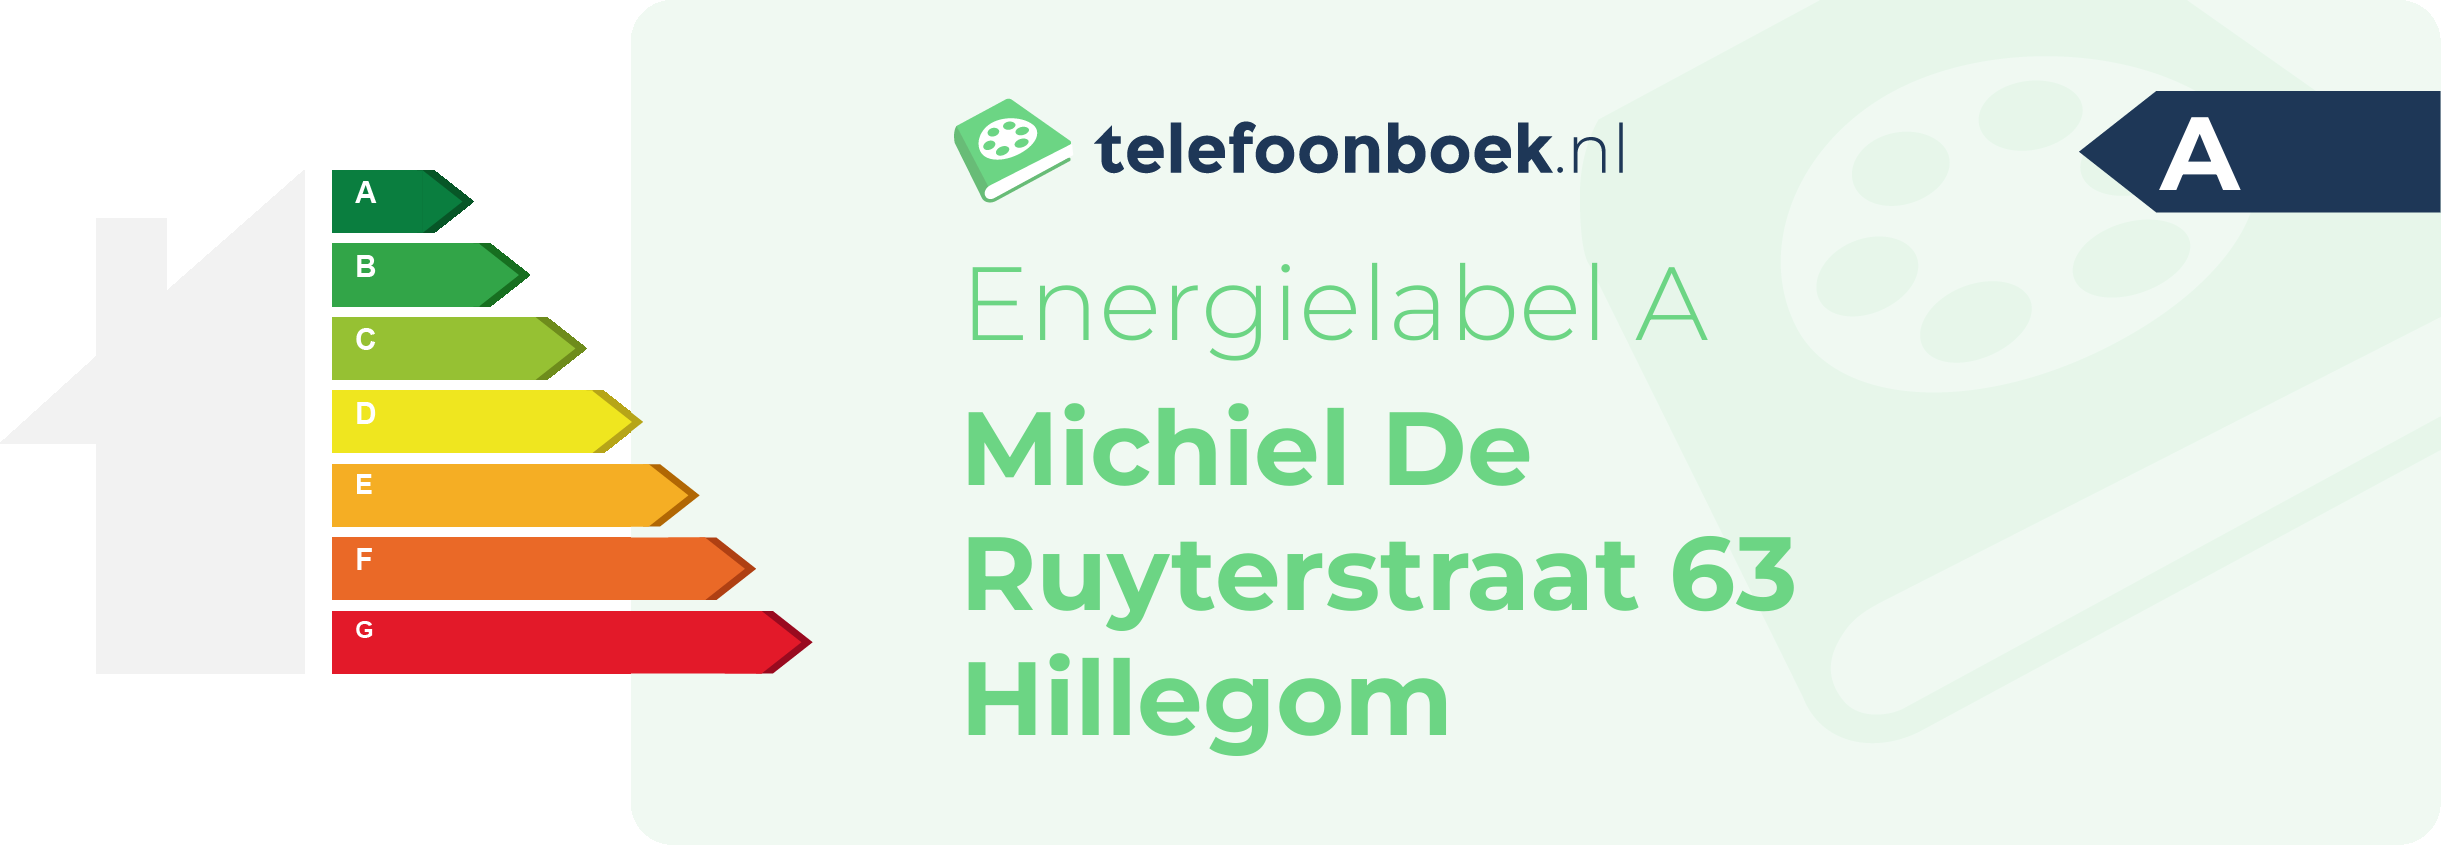 Energielabel Michiel De Ruyterstraat 63 Hillegom